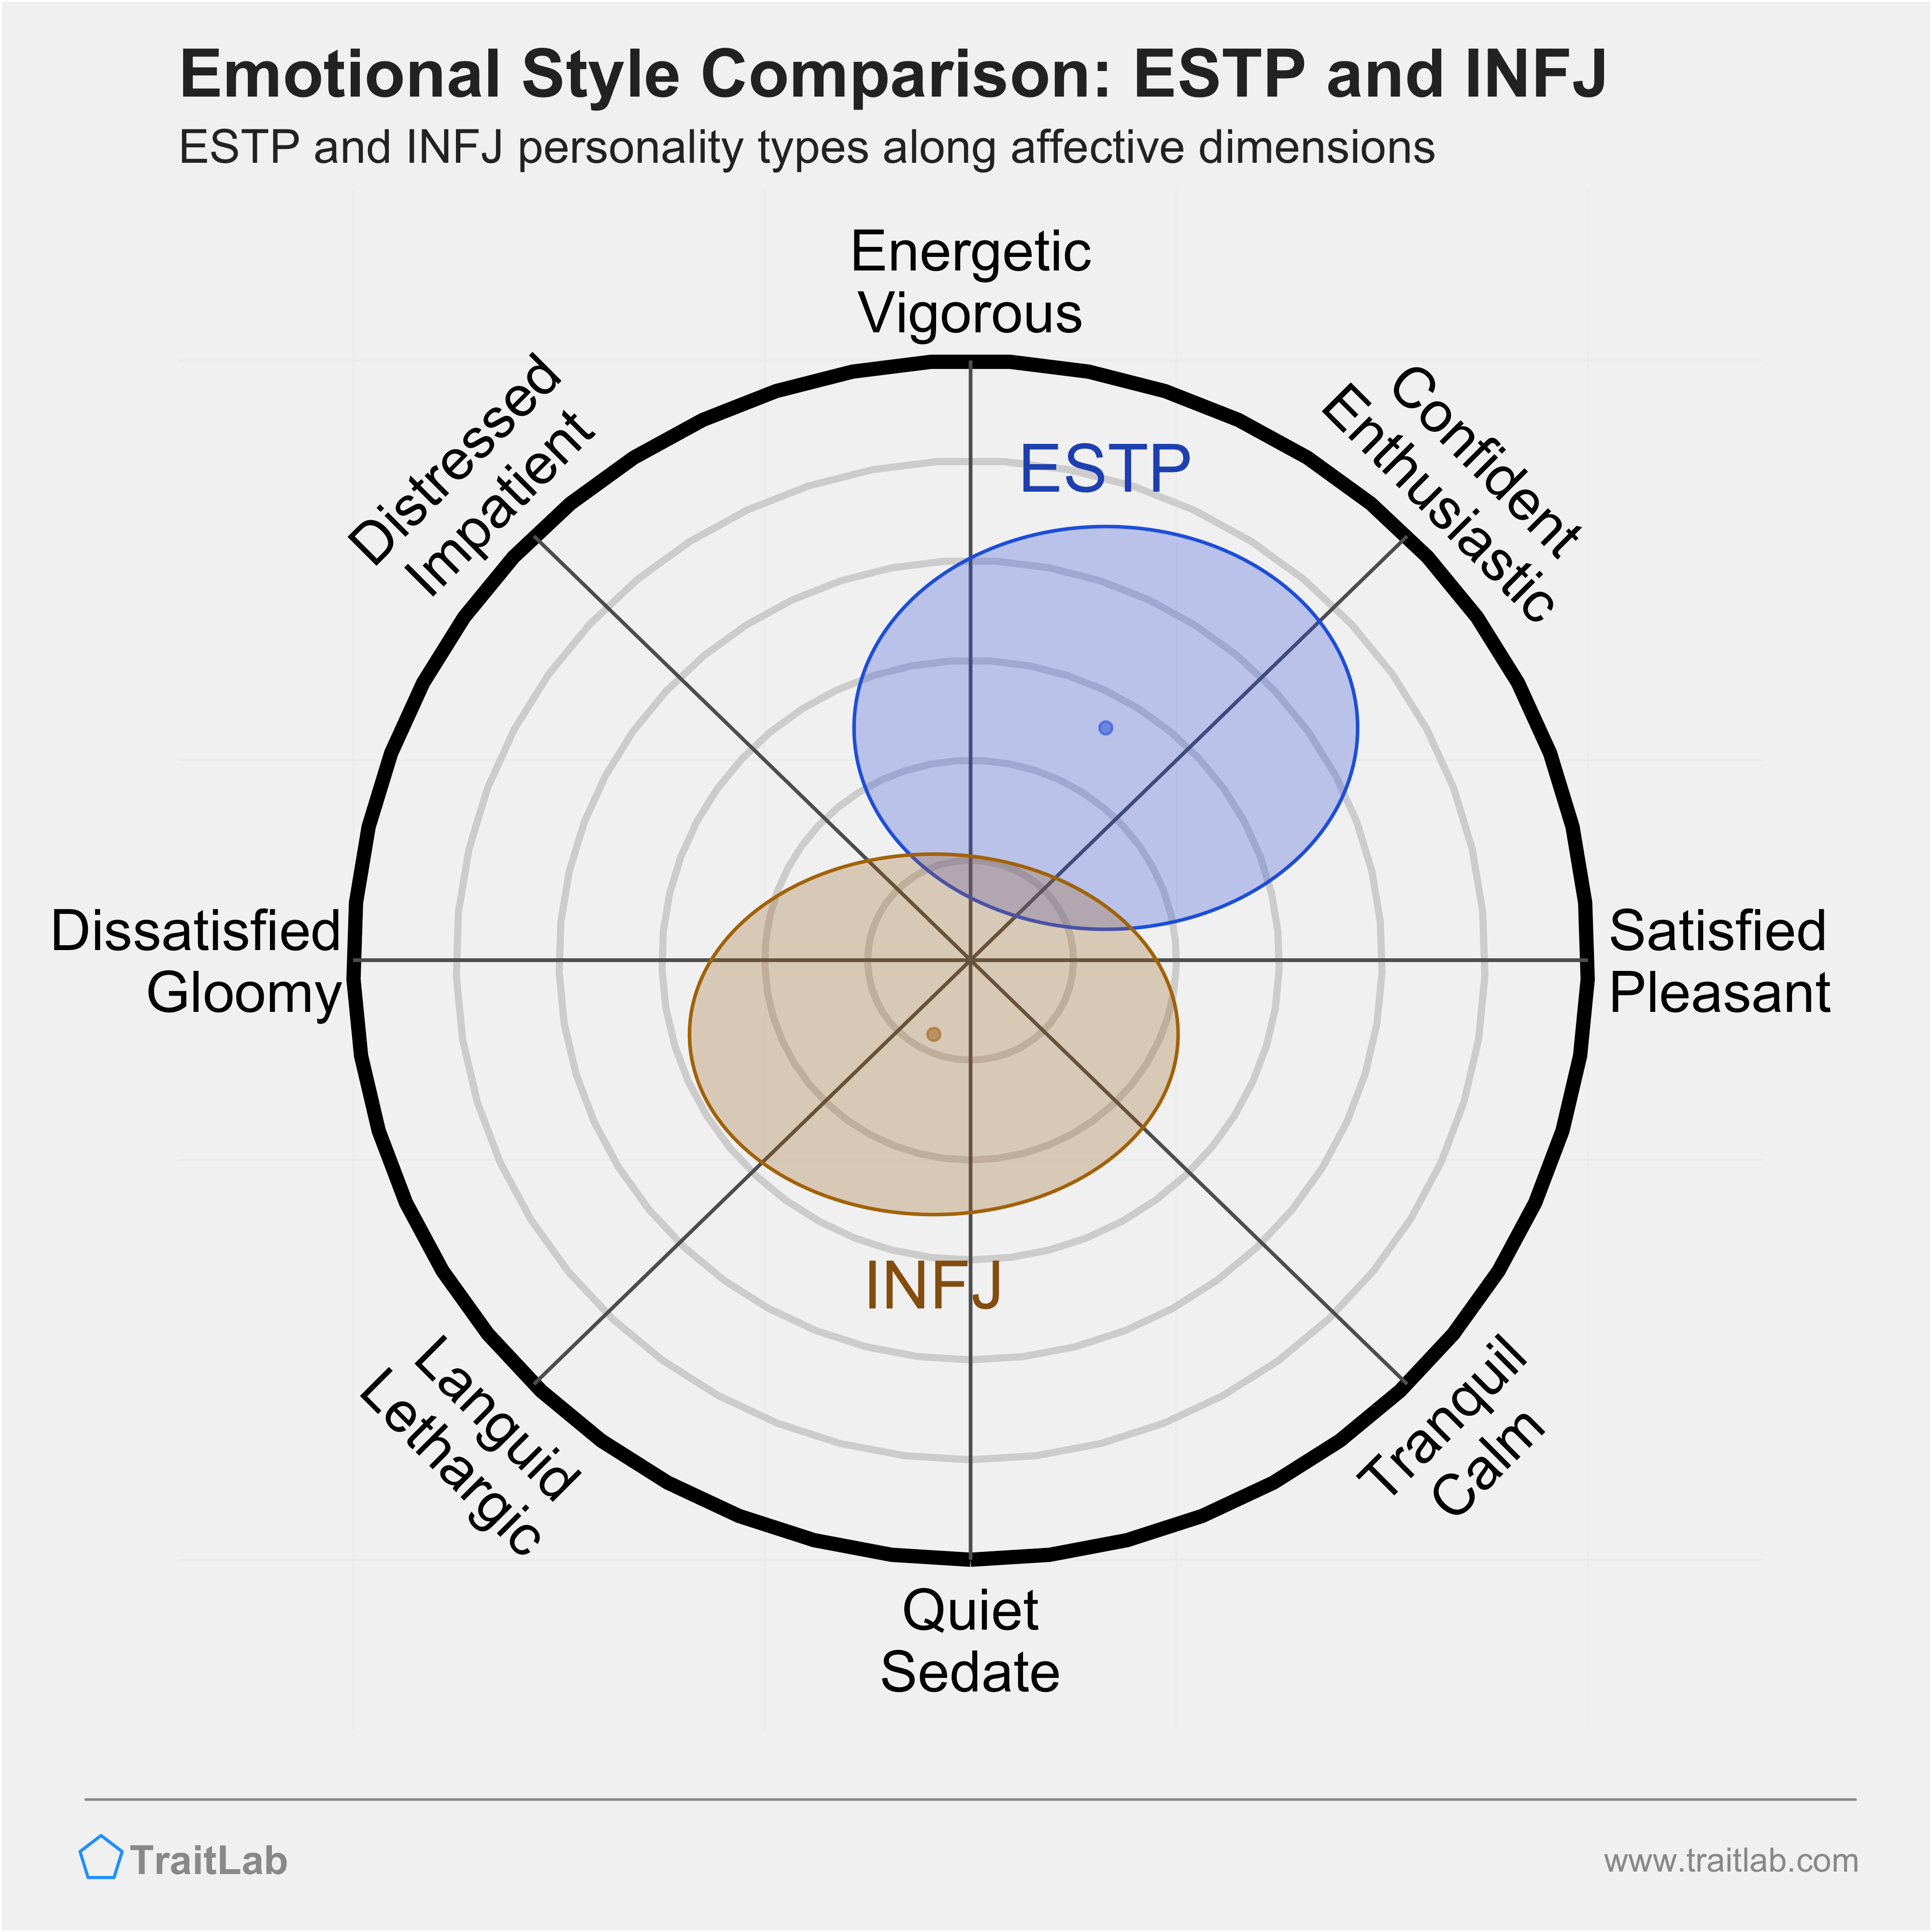 ESTP and INFJ comparison across emotional (affective) dimensions